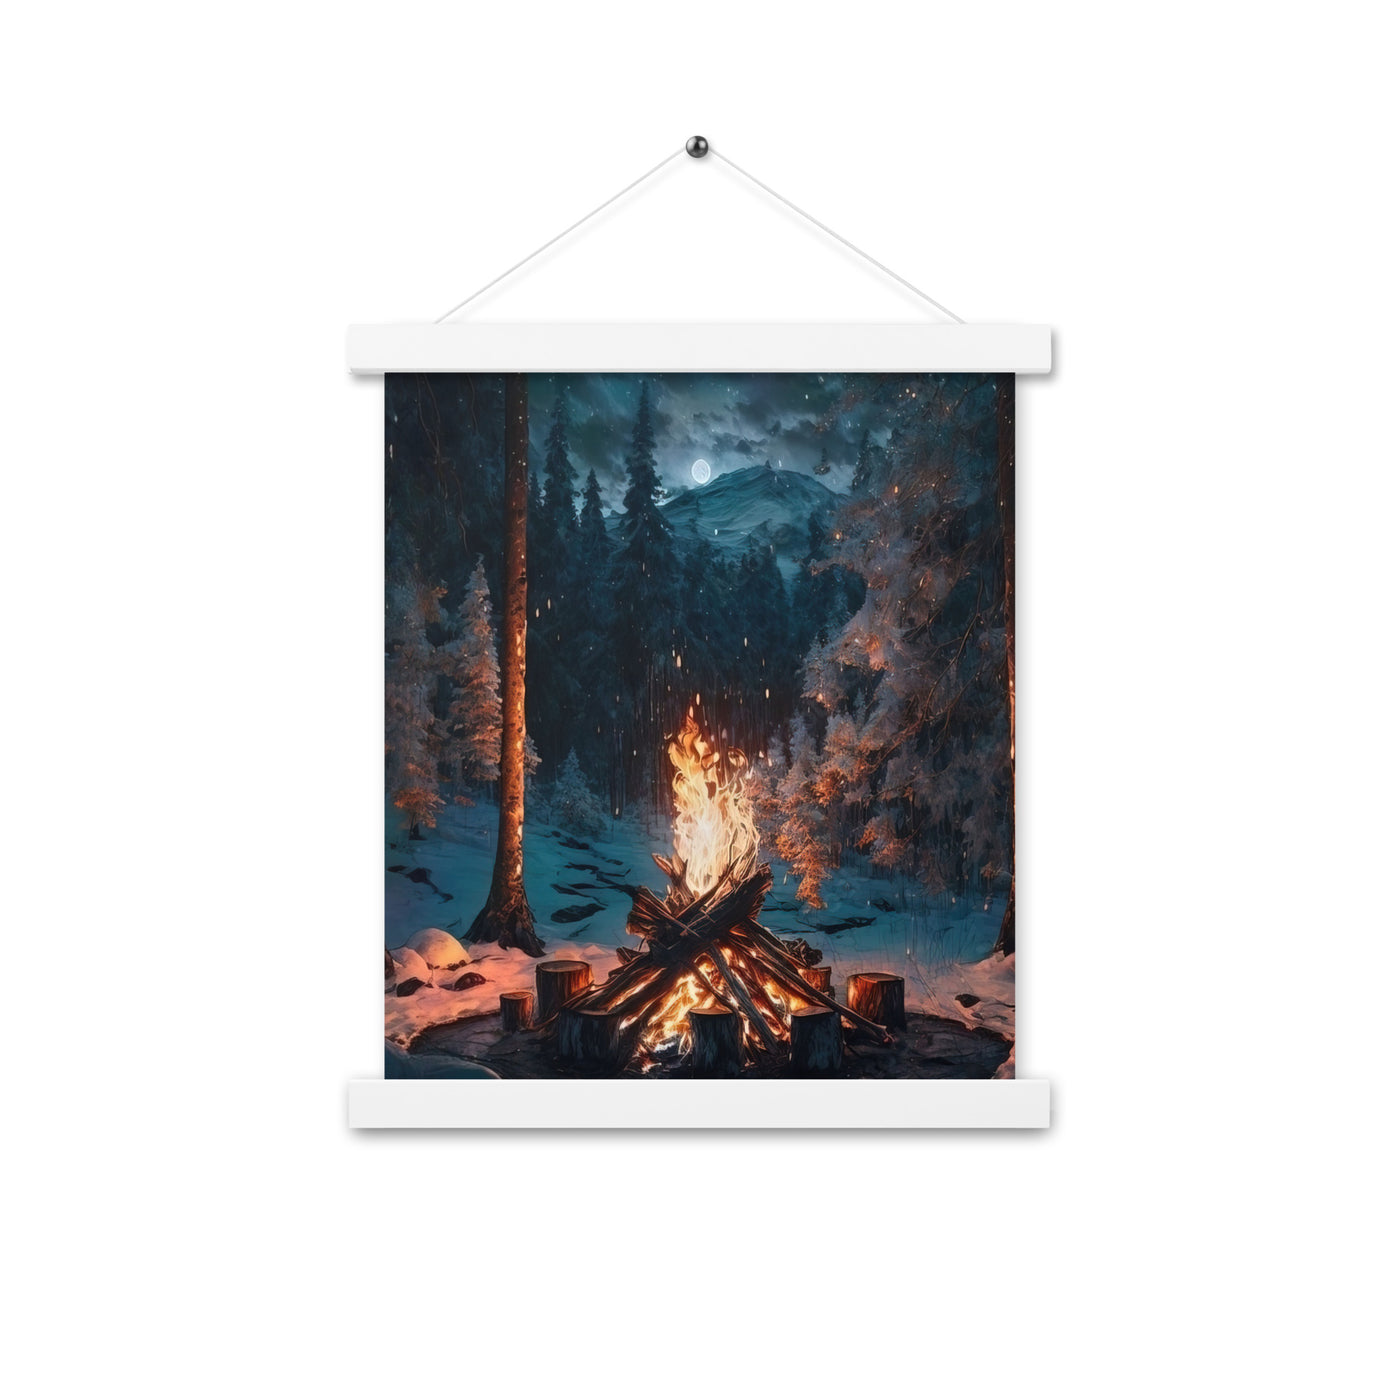 Lagerfeuer beim Camping - Wald mit Schneebedeckten Bäumen - Malerei - Premium Poster mit Aufhängung camping xxx 27.9 x 35.6 cm